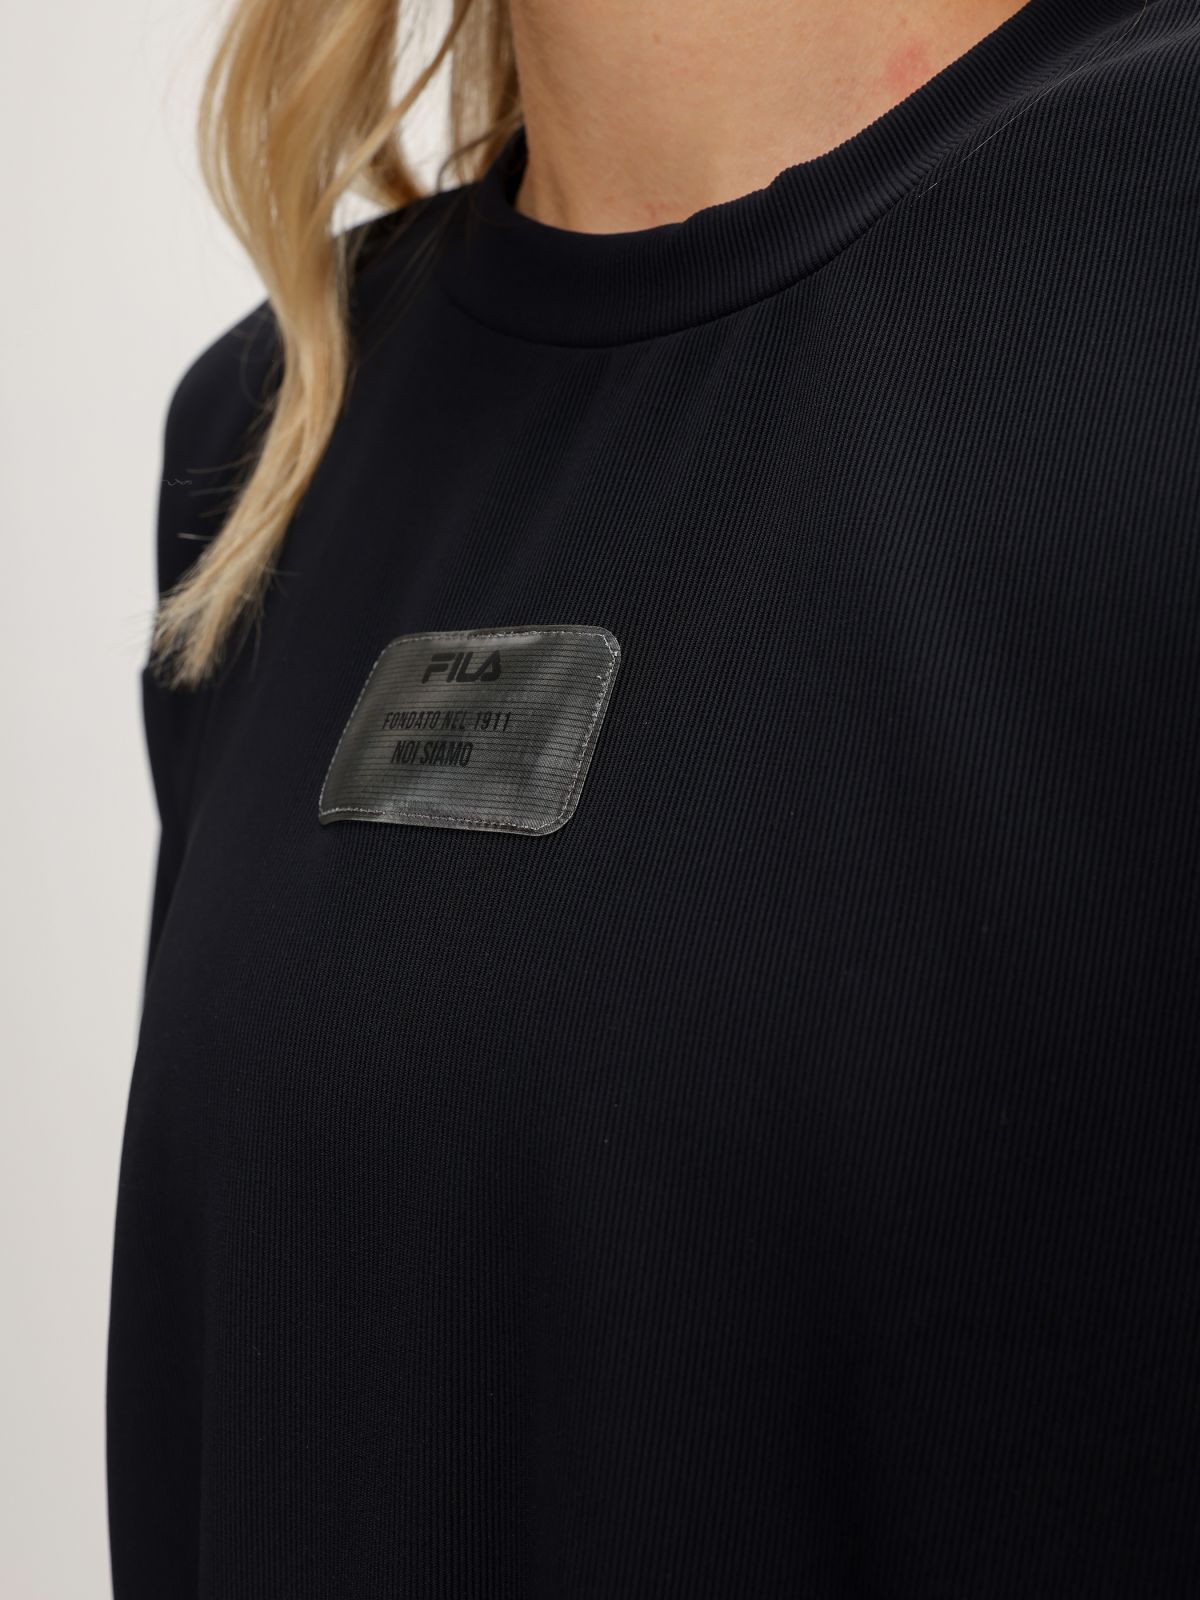  חולצת ריב עם פאץ' לוגו של FILA